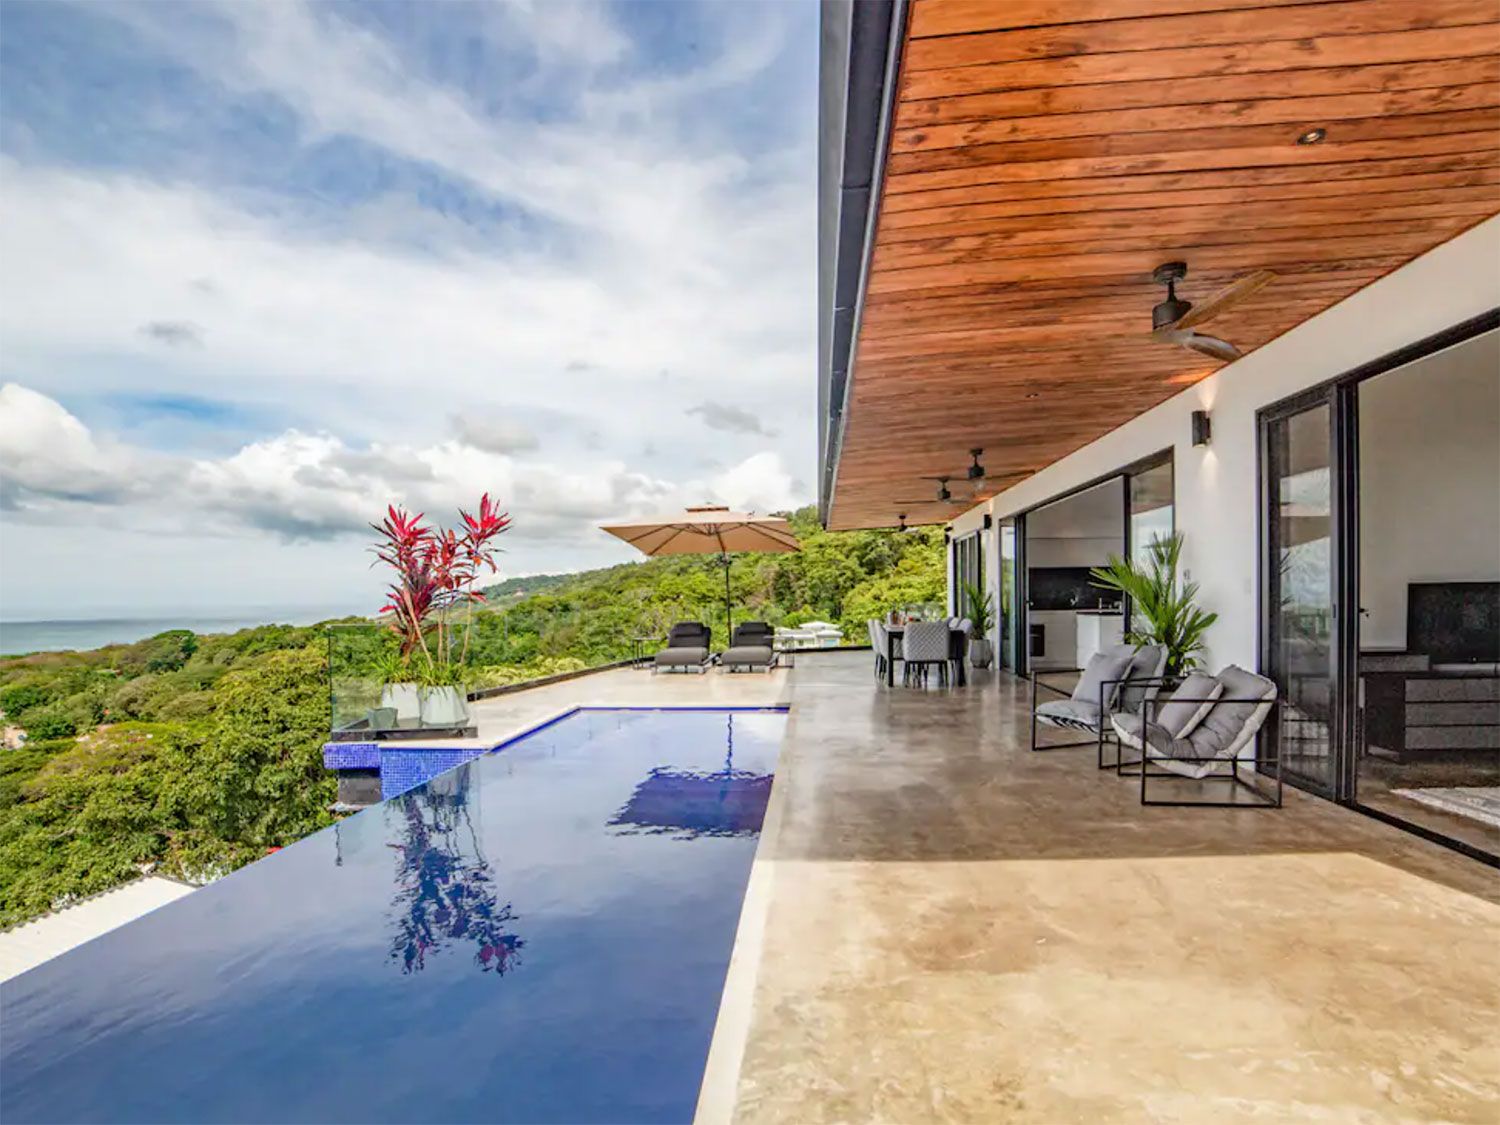 10 increíbles propiedades de Airbnb que puedes alquilar en Costa Rica 9